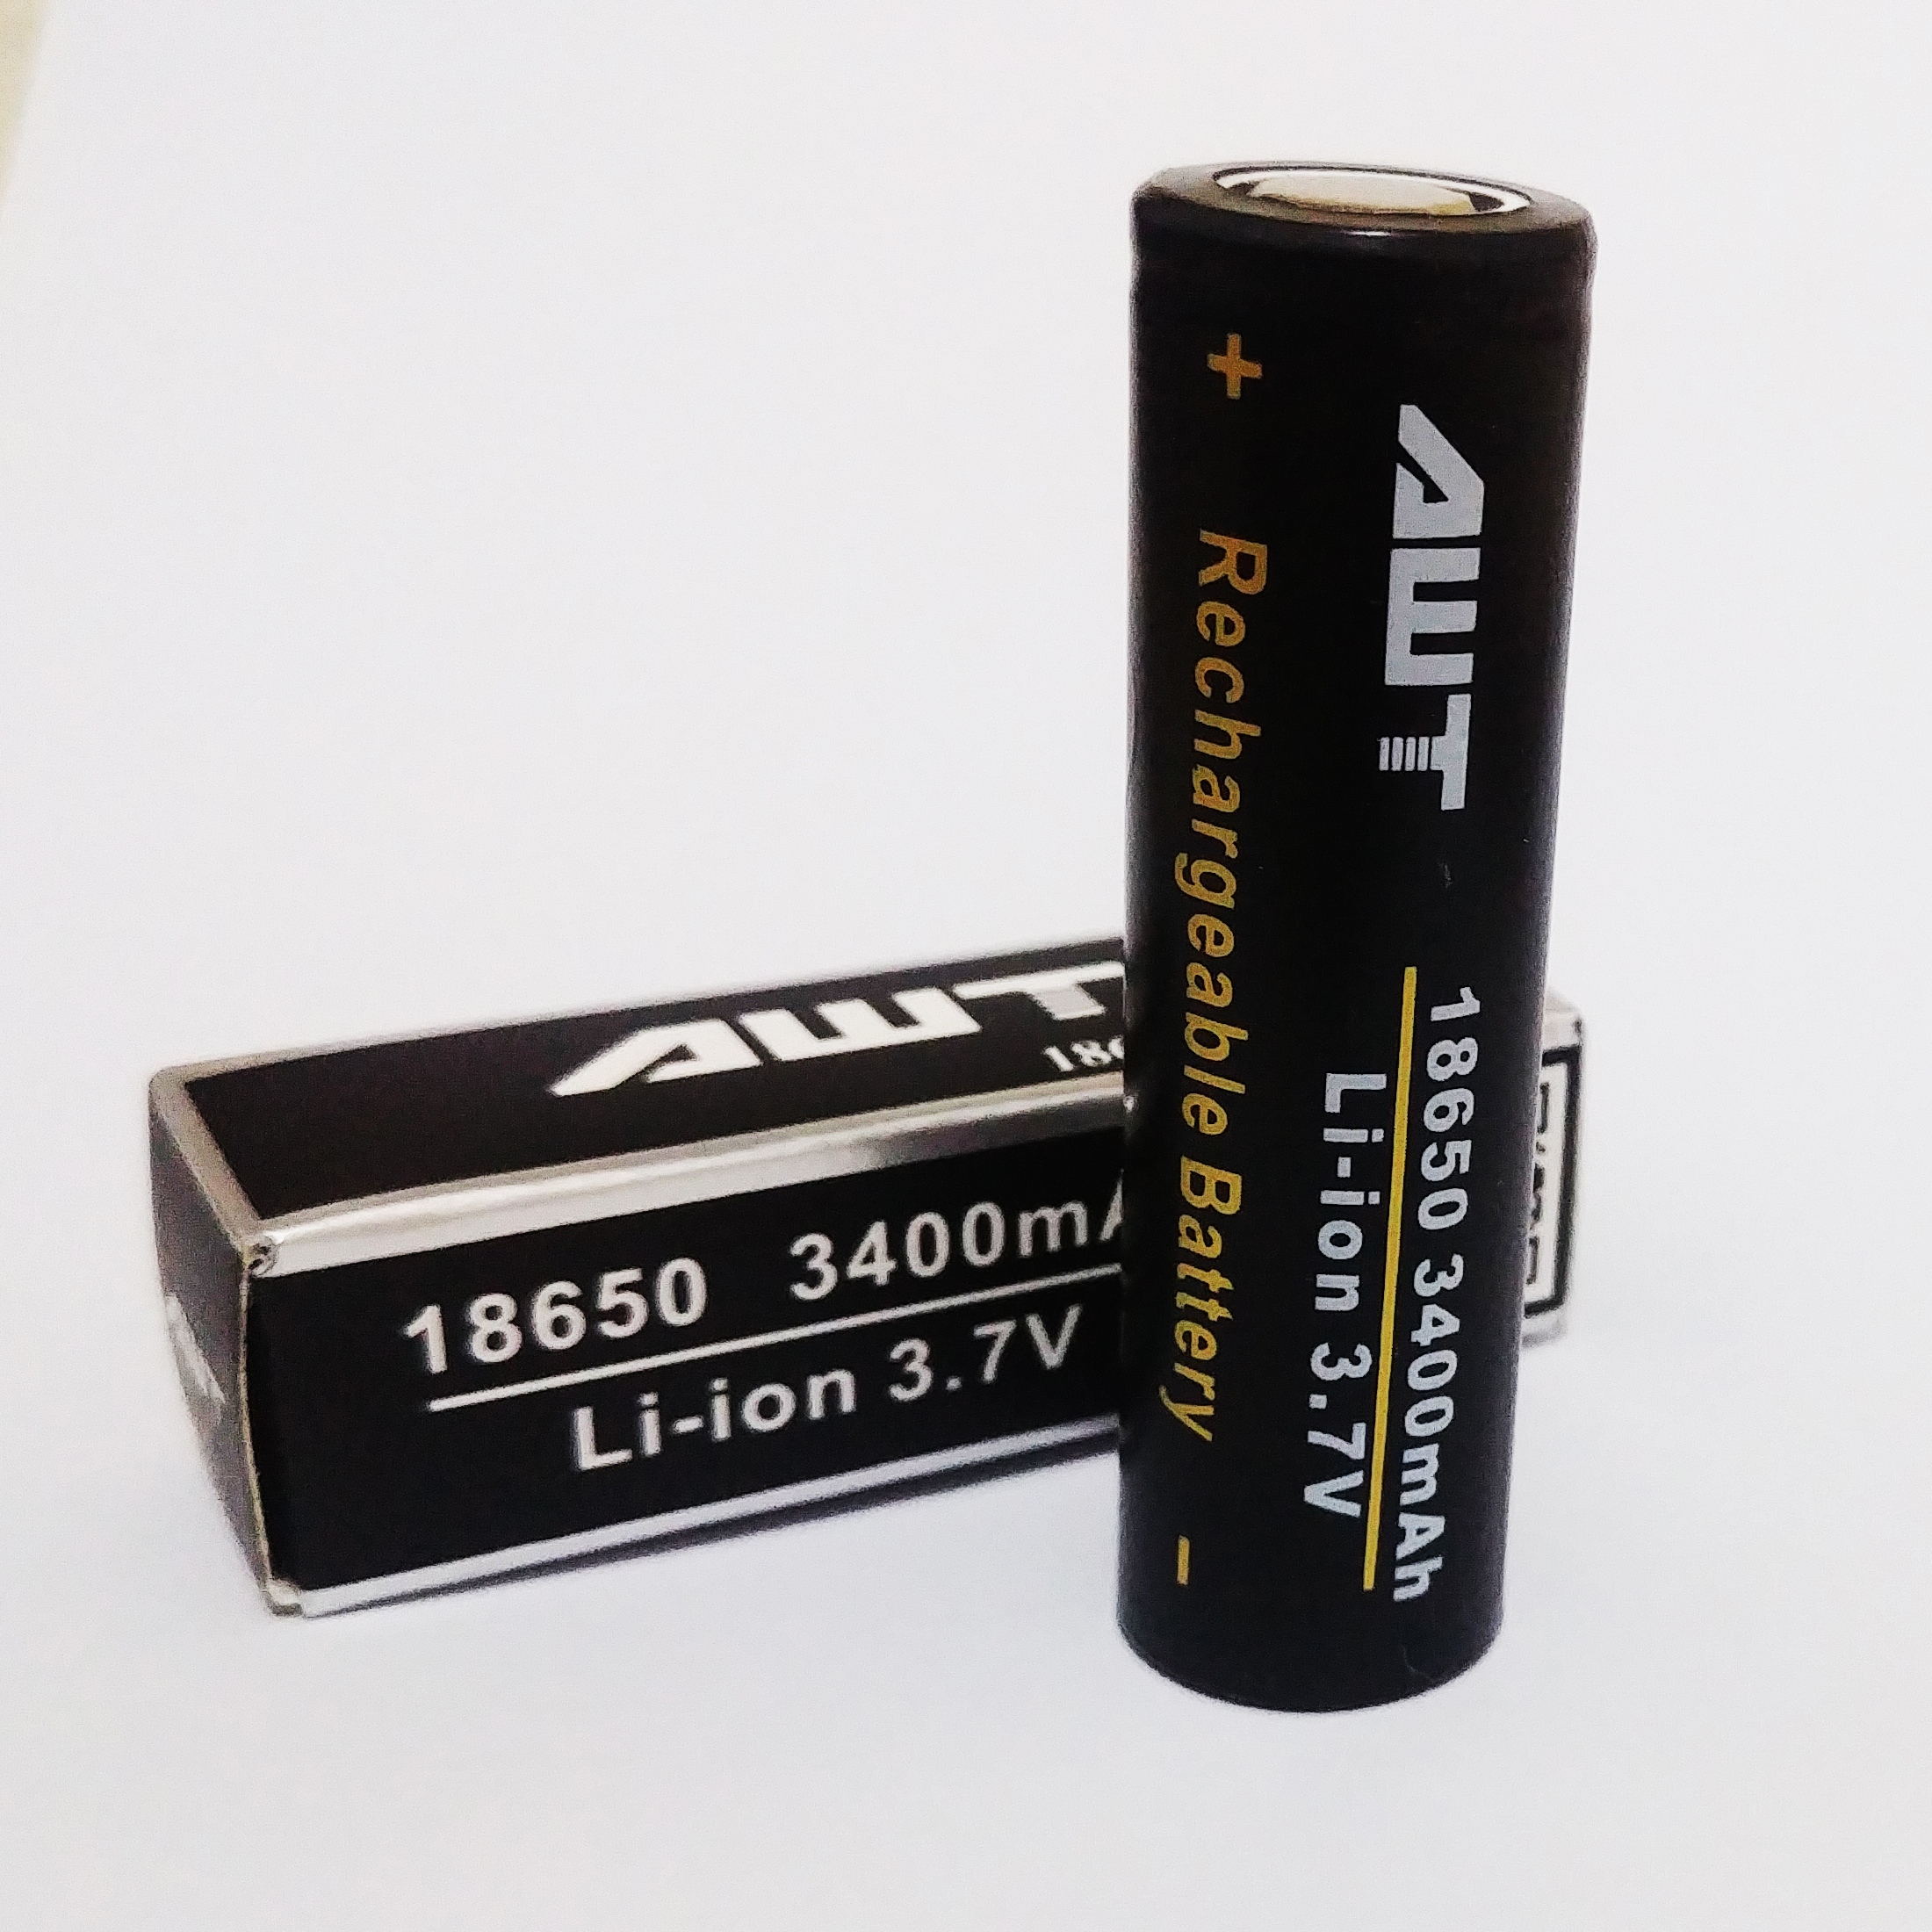 باتری لیتیوم یون قابل شارژ ای دبلیو تی کد 18650 ظرفیت 3400 میلی آمپرساعت